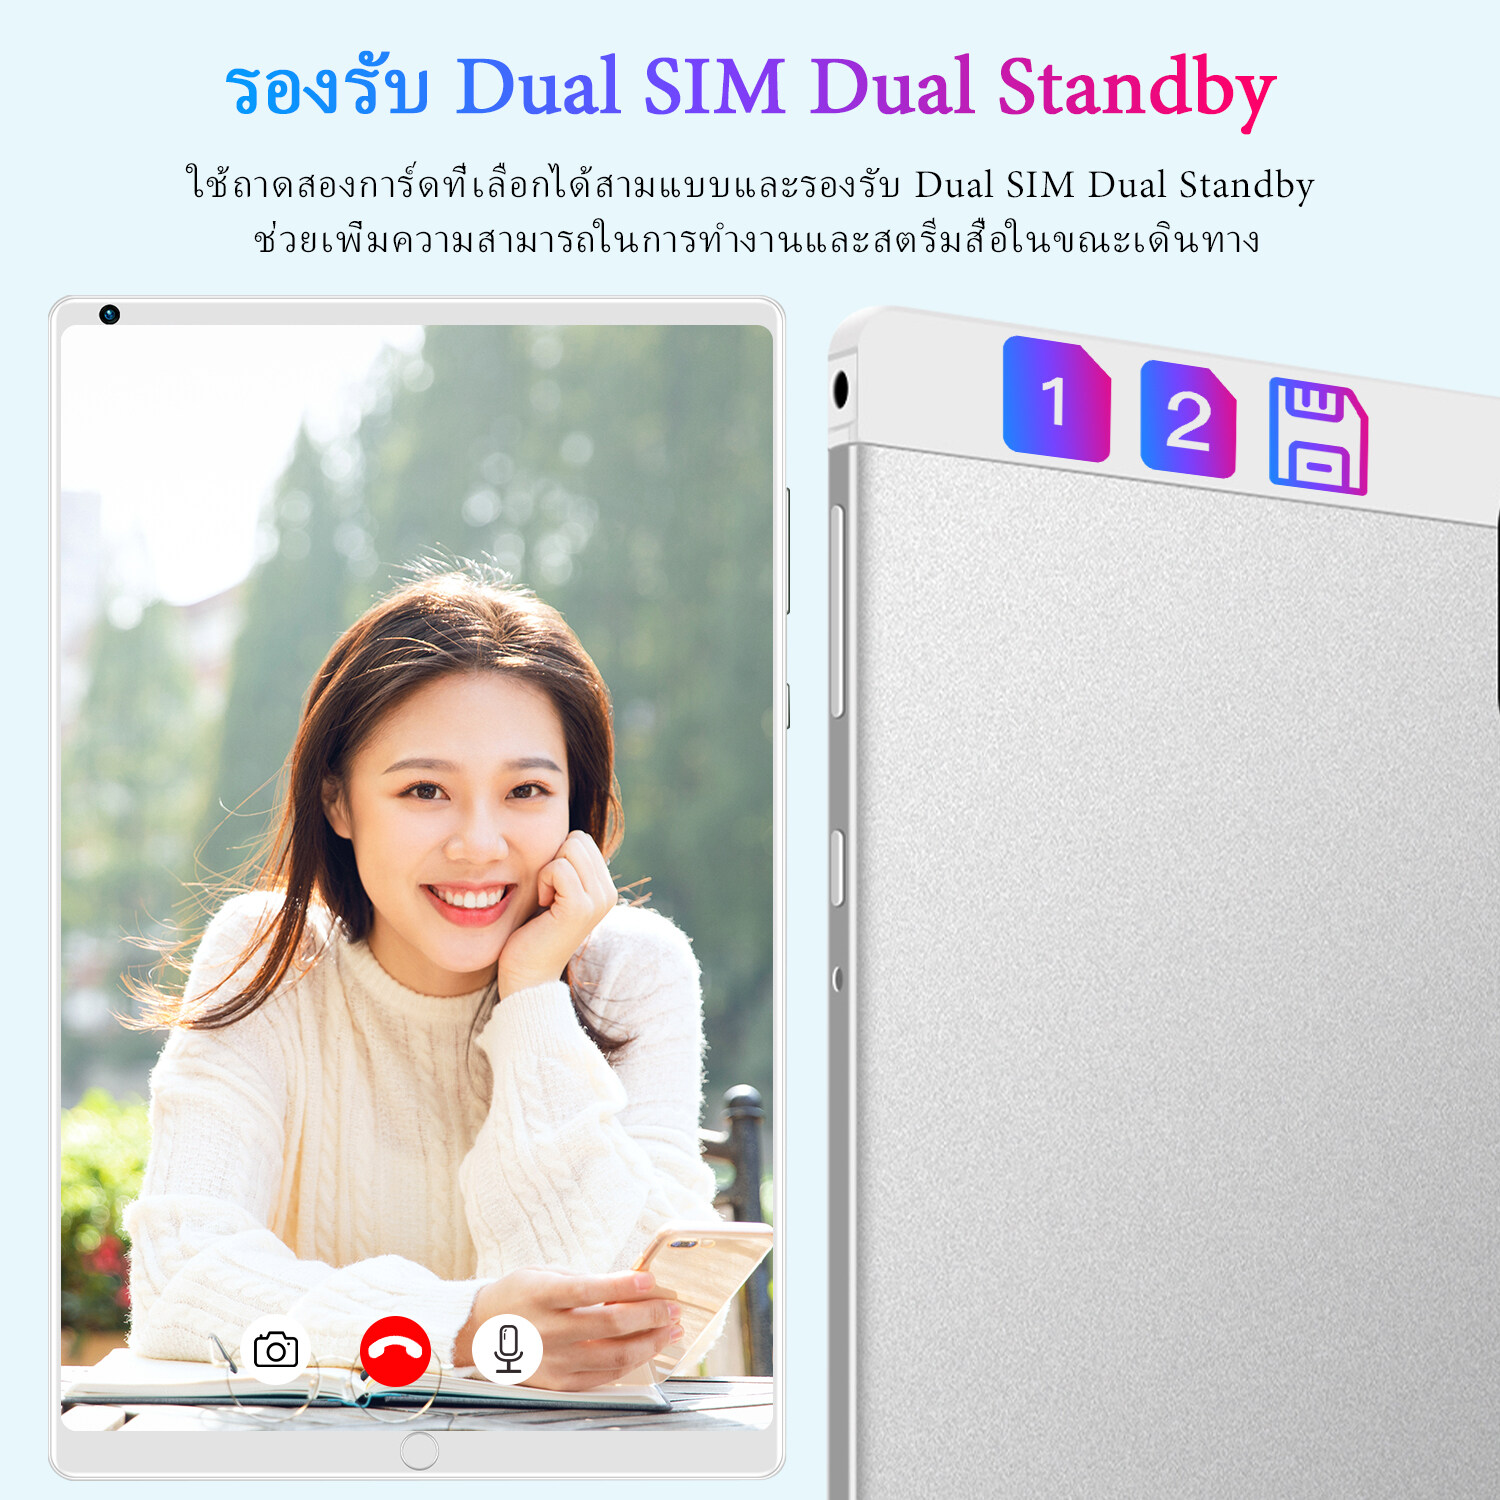 ลองดูภาพสินค้า 【ซื้อ 1 แถม 1】ใหม่ Sansumg Tab A8 แท็บเล็ต 10.4 นิ้ว Tablet Wifi 4g/5G แท็บเล็ตพีซี RAM16G ROM512G แท็บเล็ตโทรได้ รองรับ 2 ซิมการ์ด Andorid11.0 Full HD 8800 mAh ไอเเพ็ด แท็บเล็ตราคาถูก ไอเเพ็ดส่งฟรี แท็บเล็ตของแท้ แท็บเล็ตราคาถูกรุ่นล่าสุด รับประกัน 1 ปี